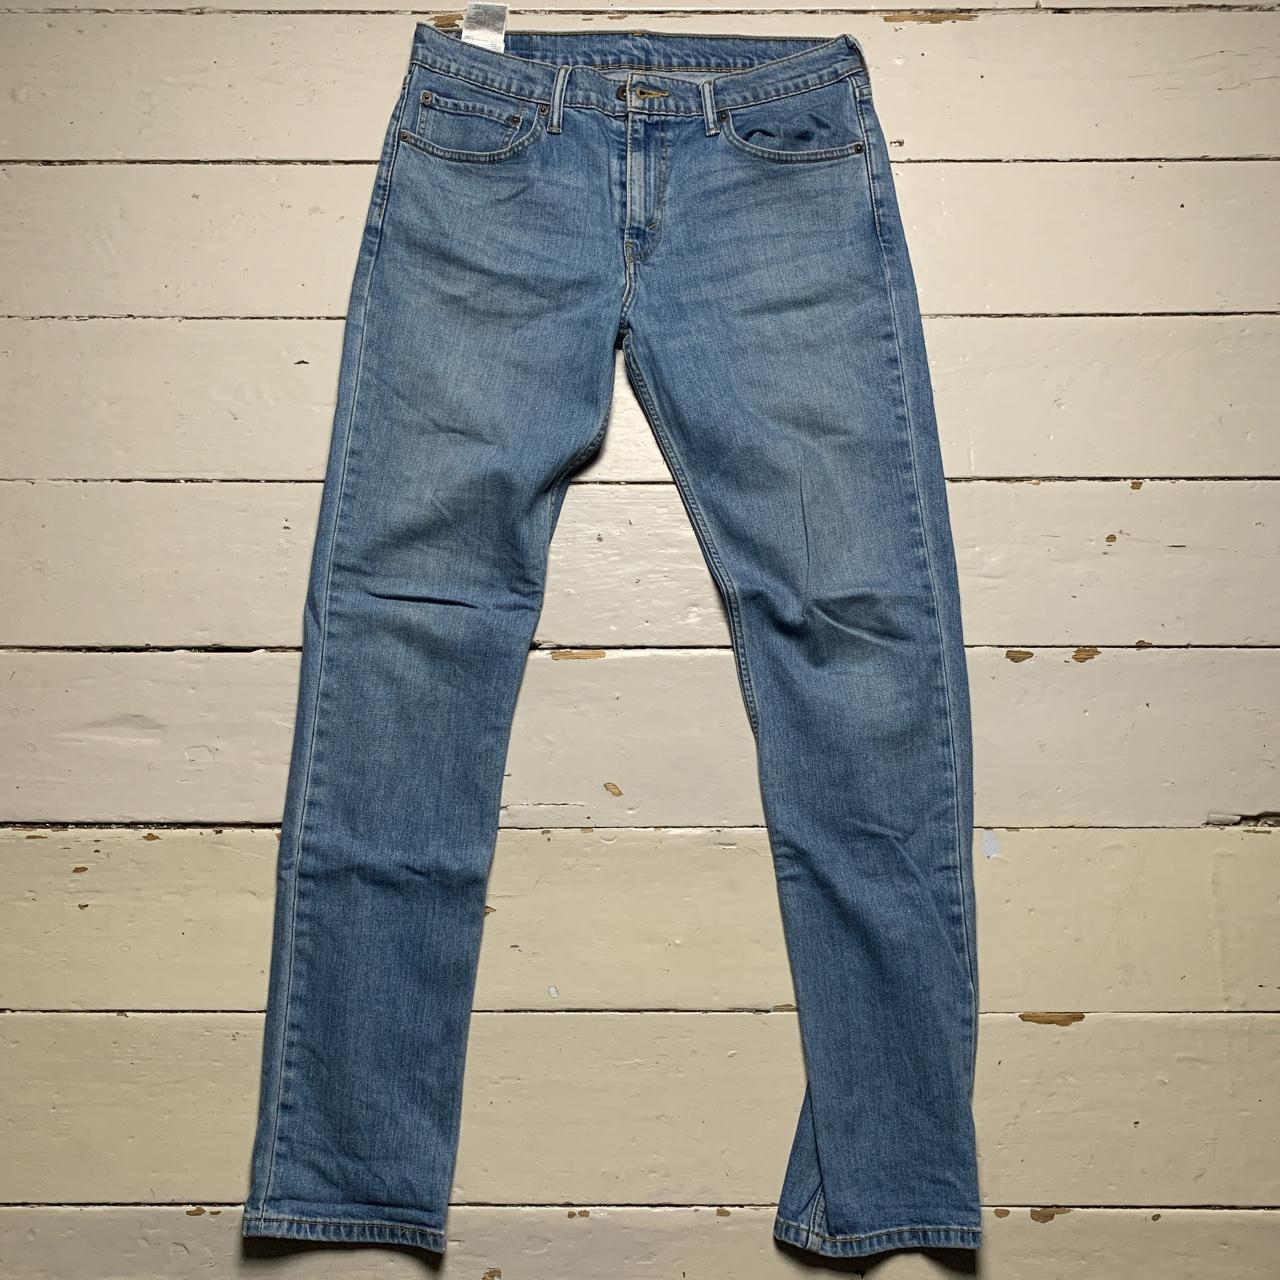 Levis 511 Slim Fit Light Blue Jeans